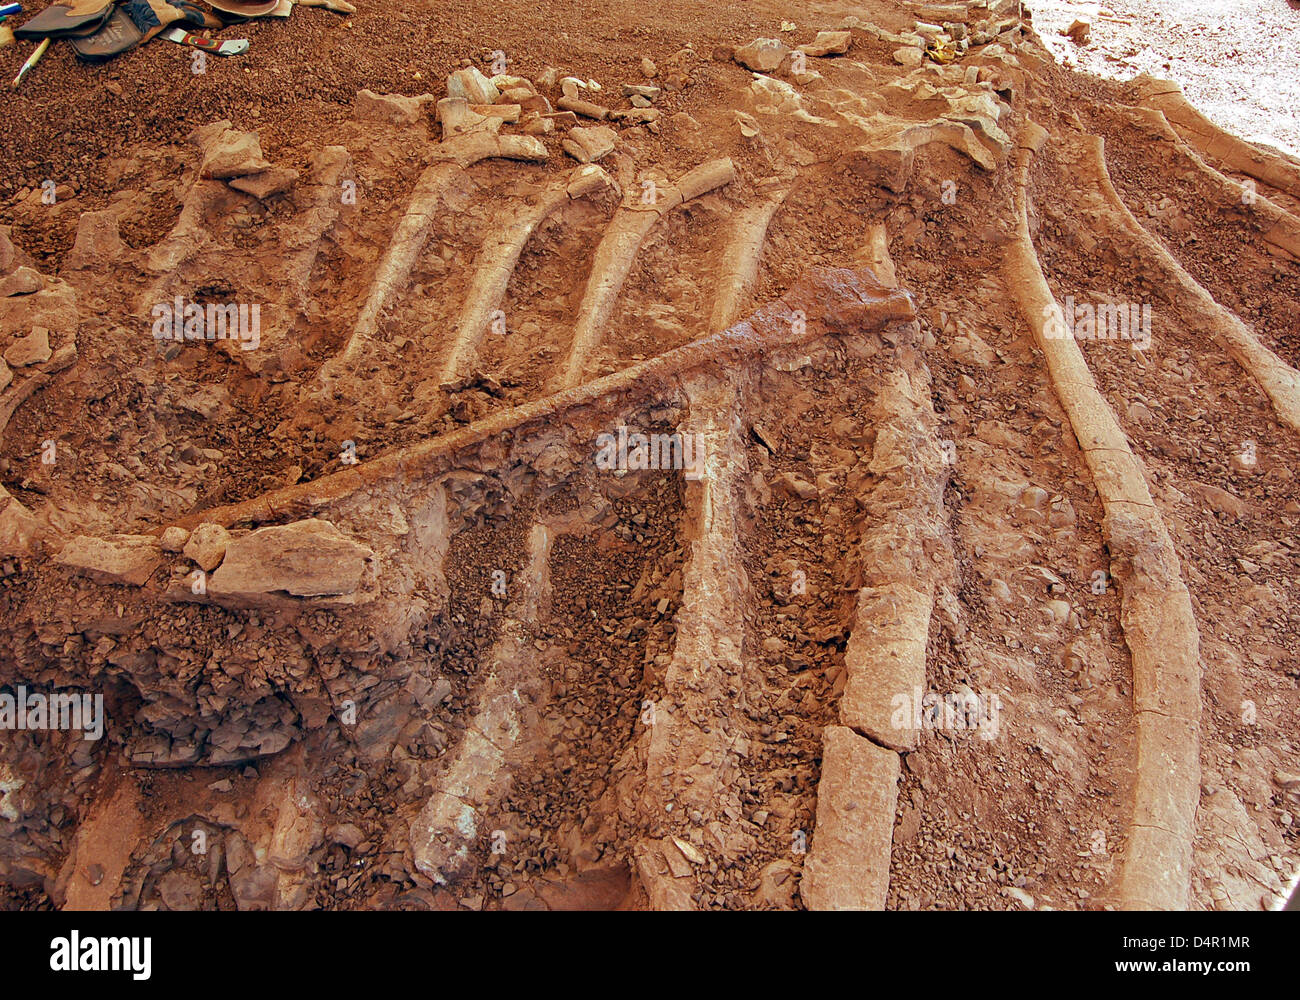 Das undatierte Handout Bild veröffentlicht durch das staatliche Museum für Naturkunde in Braunschweig zeigt Knochen offenbart ein? Spinophorosaurus Nigerensis? Dinosaurier in der Sahara. Forscher des Museums präsentiert Knochen des Dinosauriers am 16. September 2009 in Braunschweig, Deutschland, nachdem sie im Jahr 2007 in der Sahara-Wüste im Niger entdeckt worden waren. Eine Ausstellung öffnet am 21 Oktober Stockfoto